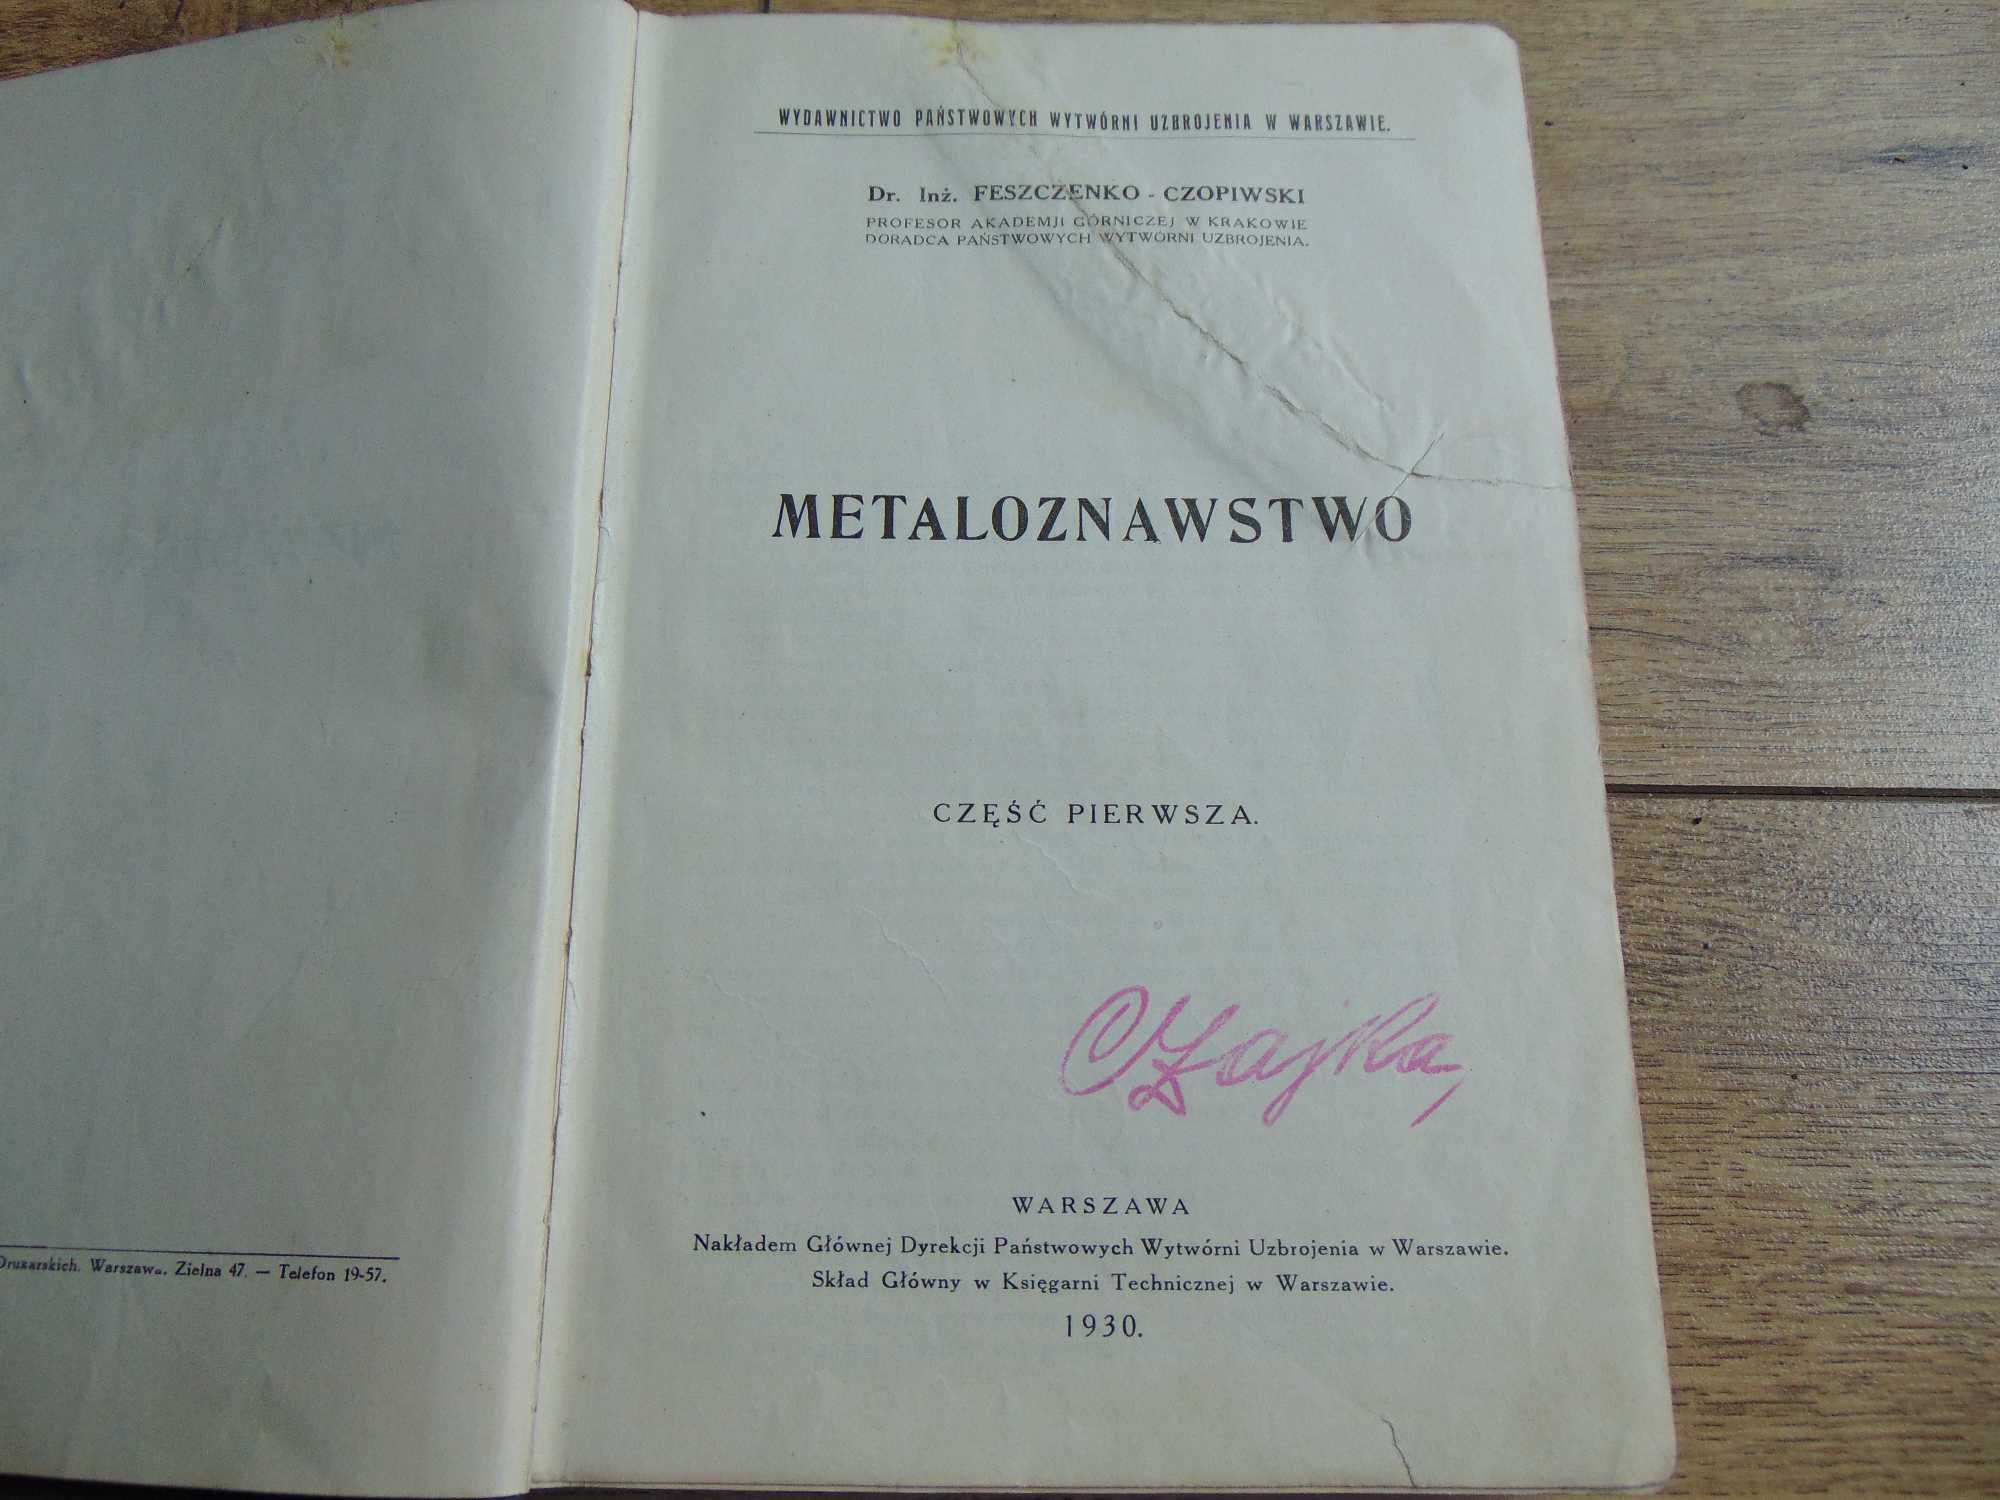 Podręcznik Metaloznawstwo I.Feszczenko-Czopiowski 1930